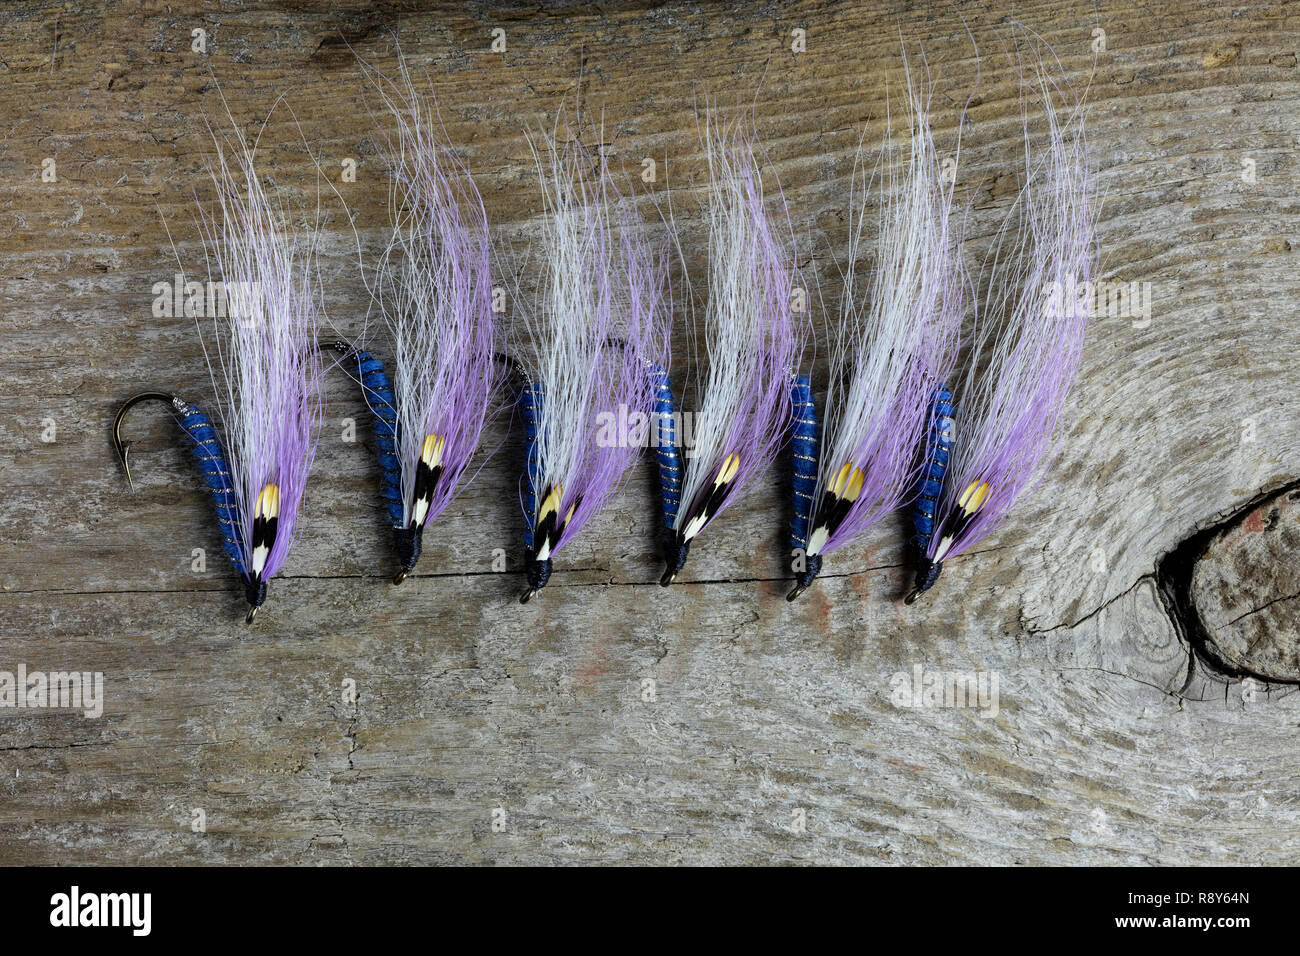 Les mouches Streamer attachés à la main, des mouches de pêche de la truite, par James D. Coppinger/Dembinsky Assoc Photo Banque D'Images